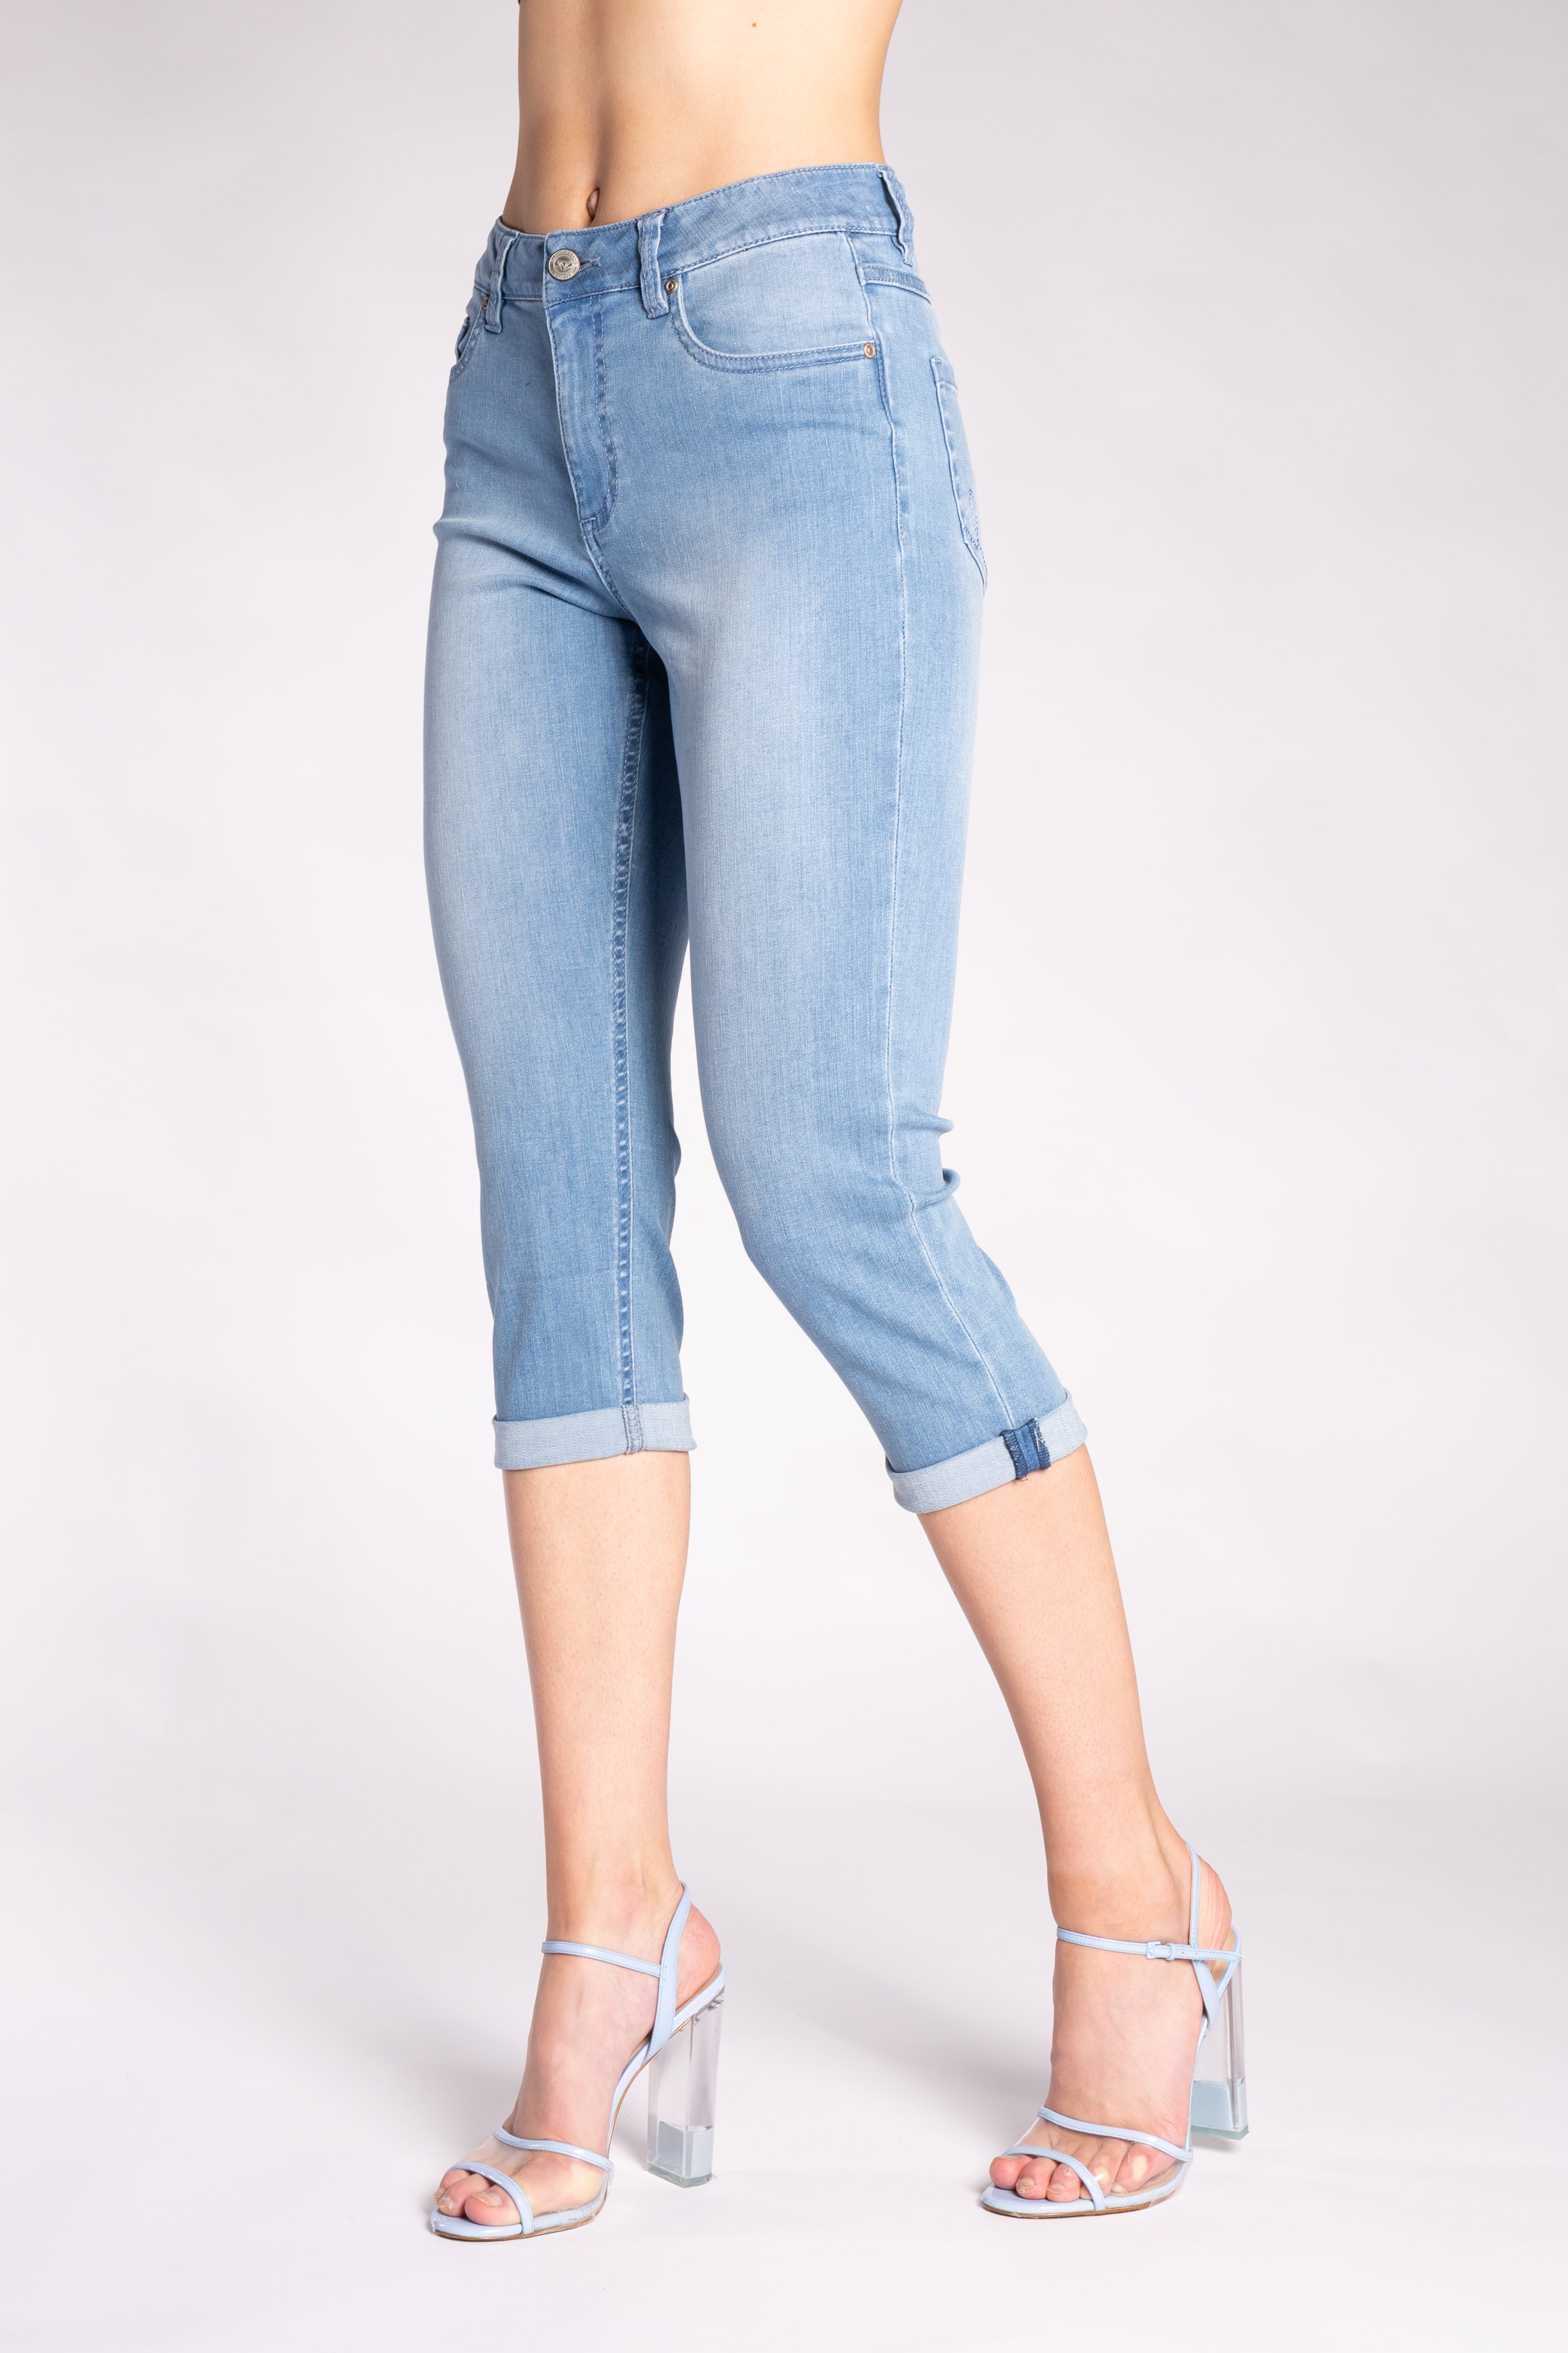 Carreli Jeans® | Angela Fit Capri In Bleach Wash